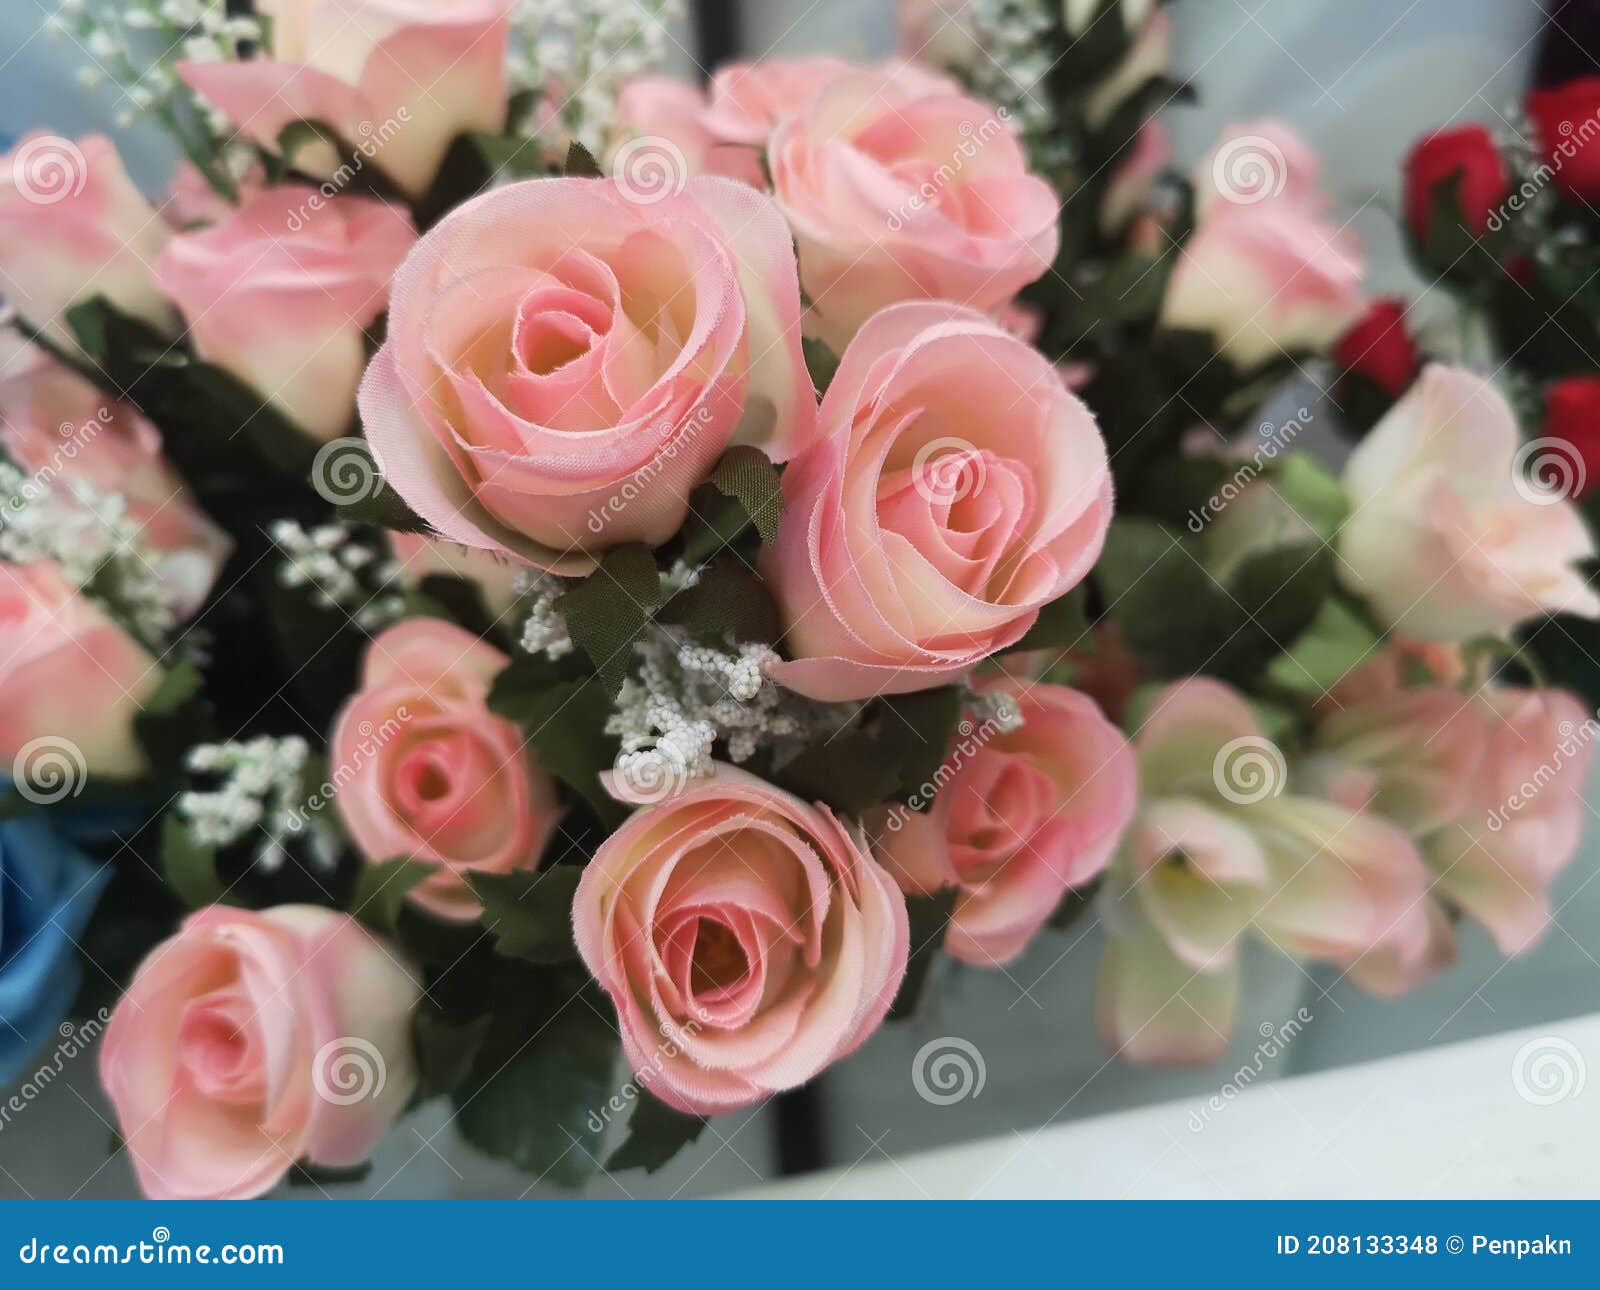 Nếu bạn yêu thích màu hồng và hoa hồng cổ, bó hoa nhân tạo đẹp màu hồng cổ và hoa hồng cổ thủ công sẽ là lựa chọn hoàn hảo cho bạn. Sự kết hợp của hai loại hoa này sẽ làm tăng thêm vẻ đẹp cho căn phòng của bạn. 